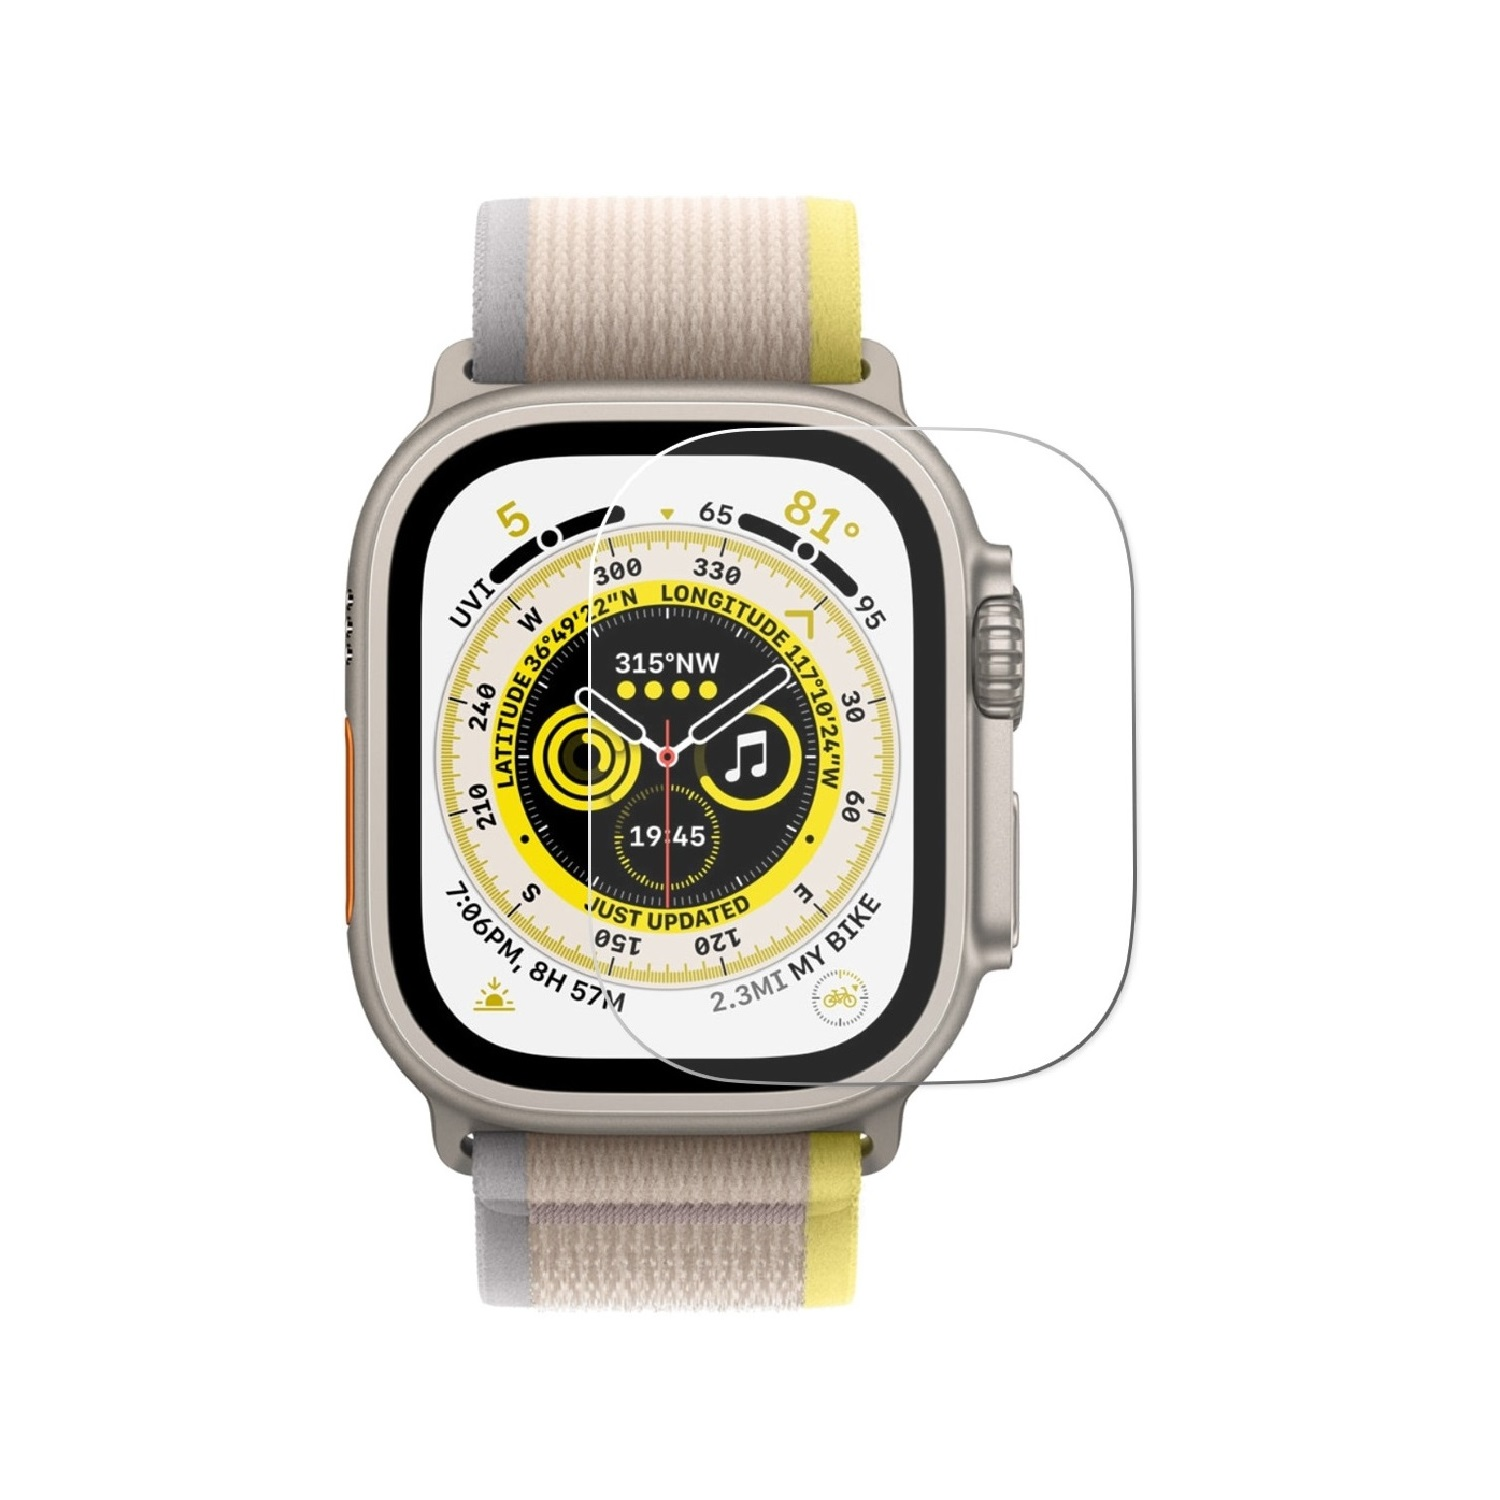 1x Apple Watch Hartglas HD Ultra 49mm) 9H Displayschutzfolie(für Echtes Schutzglas Tempered KLAR PROTECTORKING